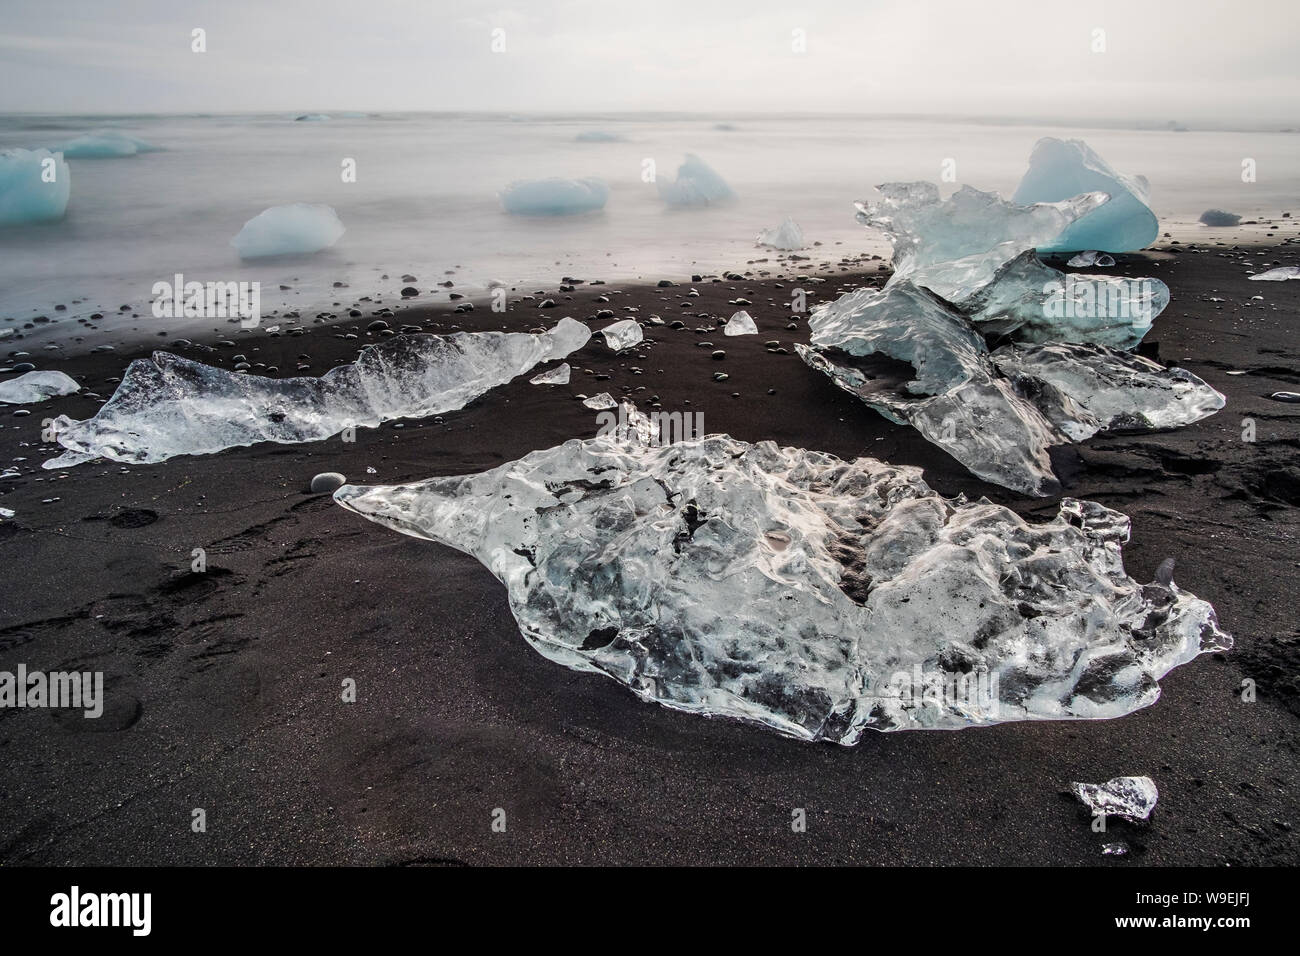 Banc de glace sur la plage de sable noir de l'Islande. Jokursarlon, plage du diamant, de l'Islande Banque D'Images